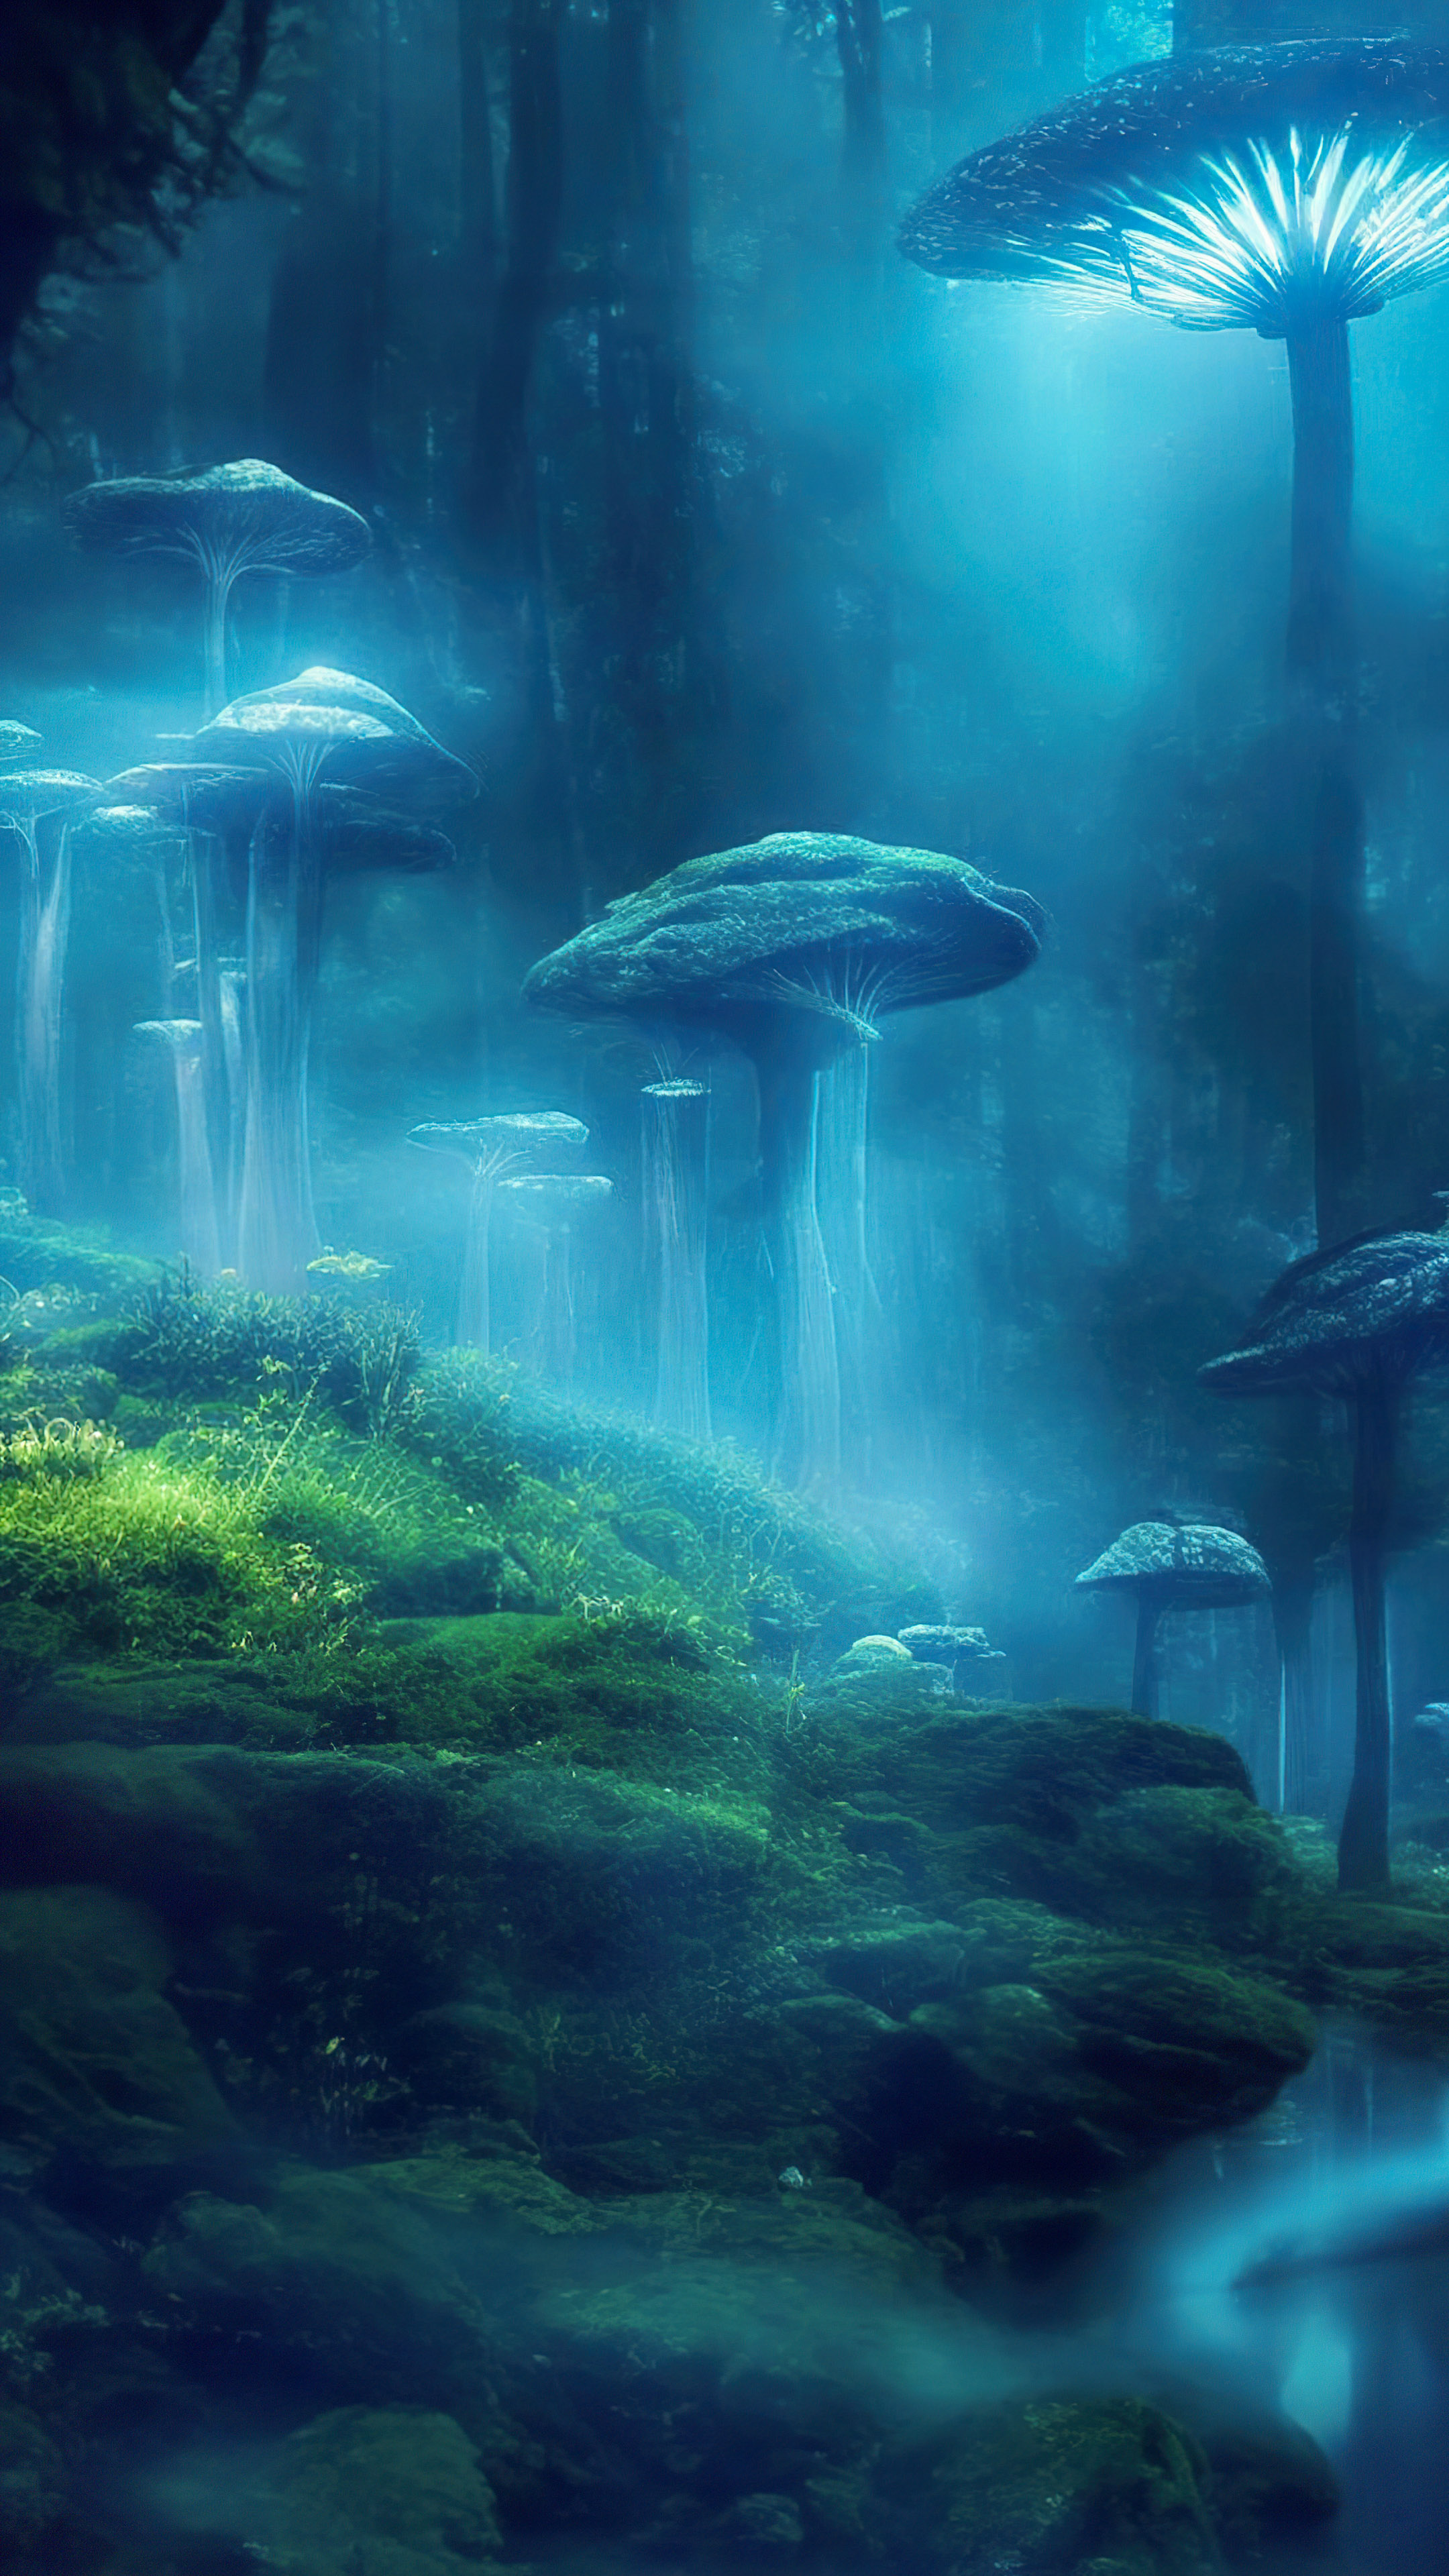 Apportez la beauté d'une clairière mystique à votre iPhone avec notre beau fond d'écran nature, présentant des champignons bioluminescents qui créent une scène enchantée et surnaturelle.